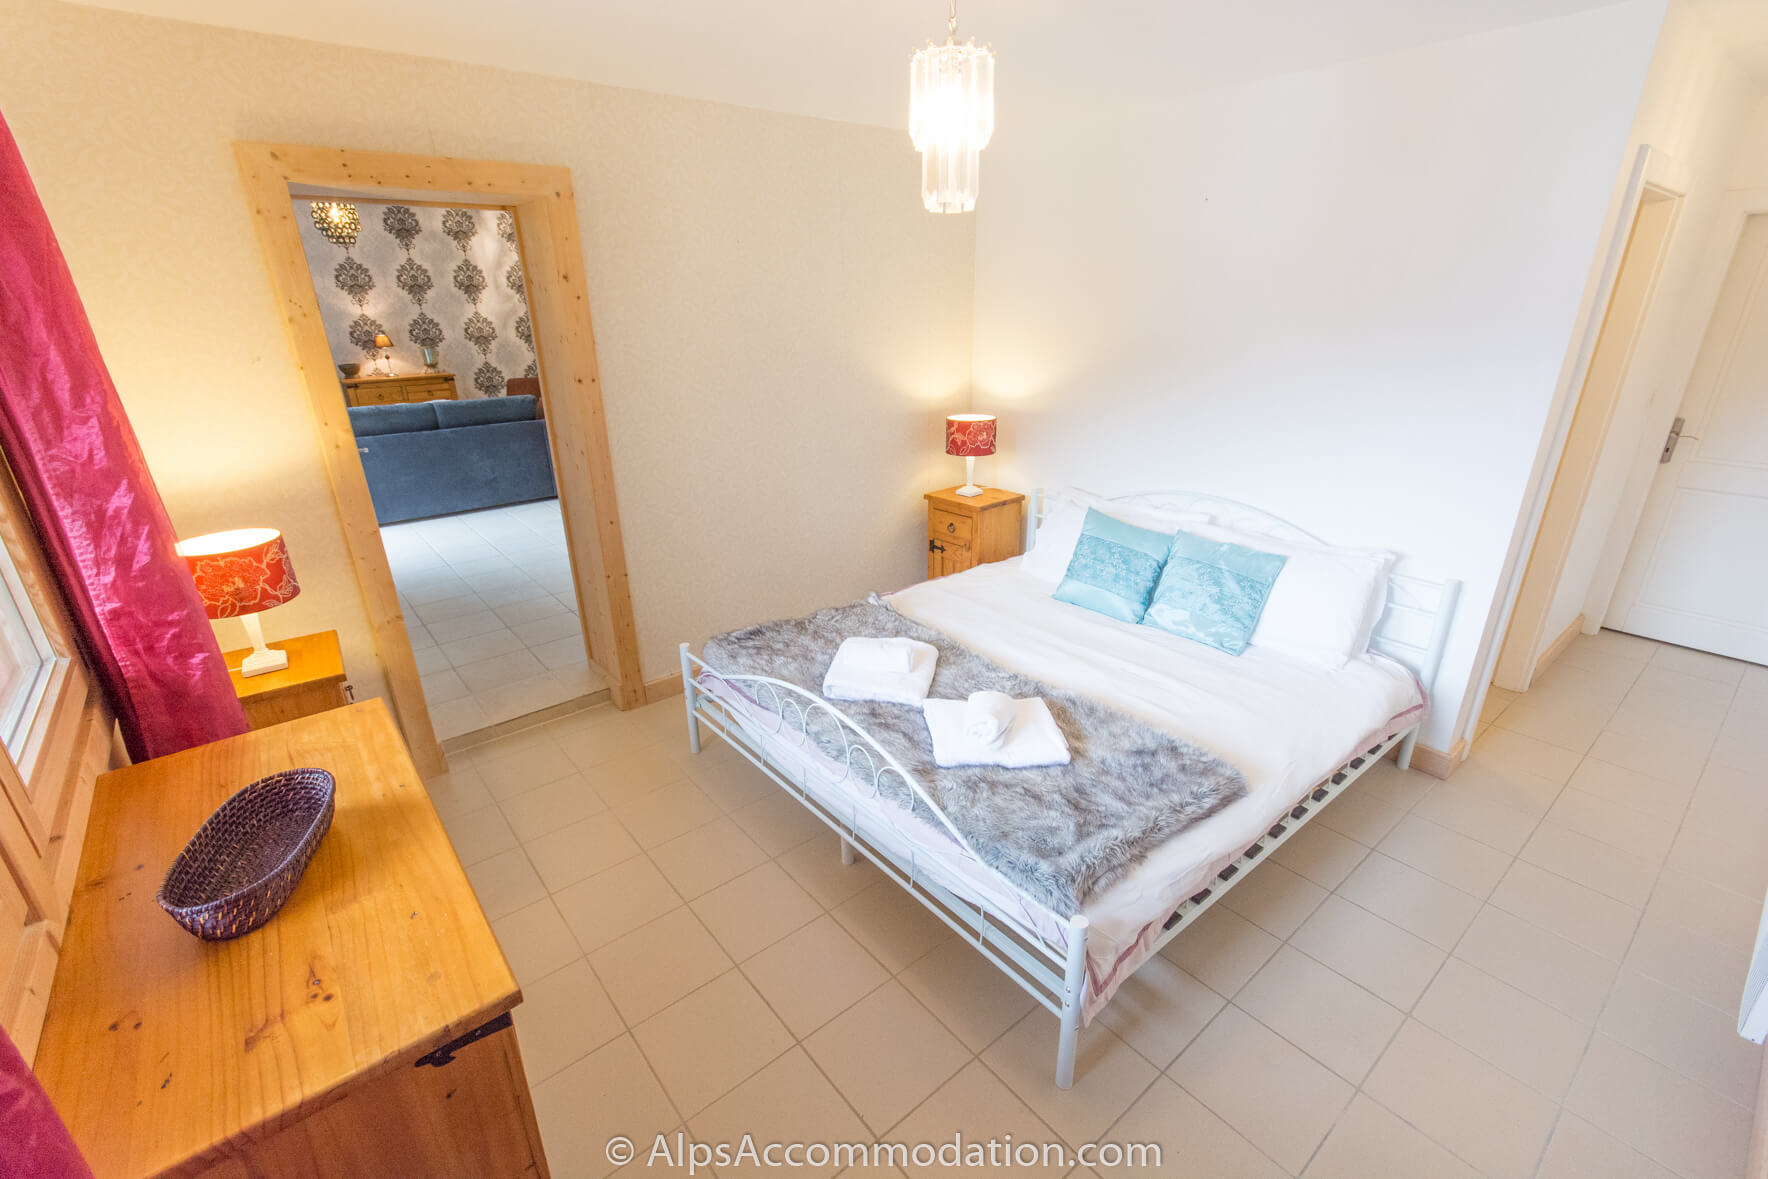 Chalet Falcon Samoëns - L'appartement du rez-de-chaussée offre une chambre supplémentaire avec salle de bains